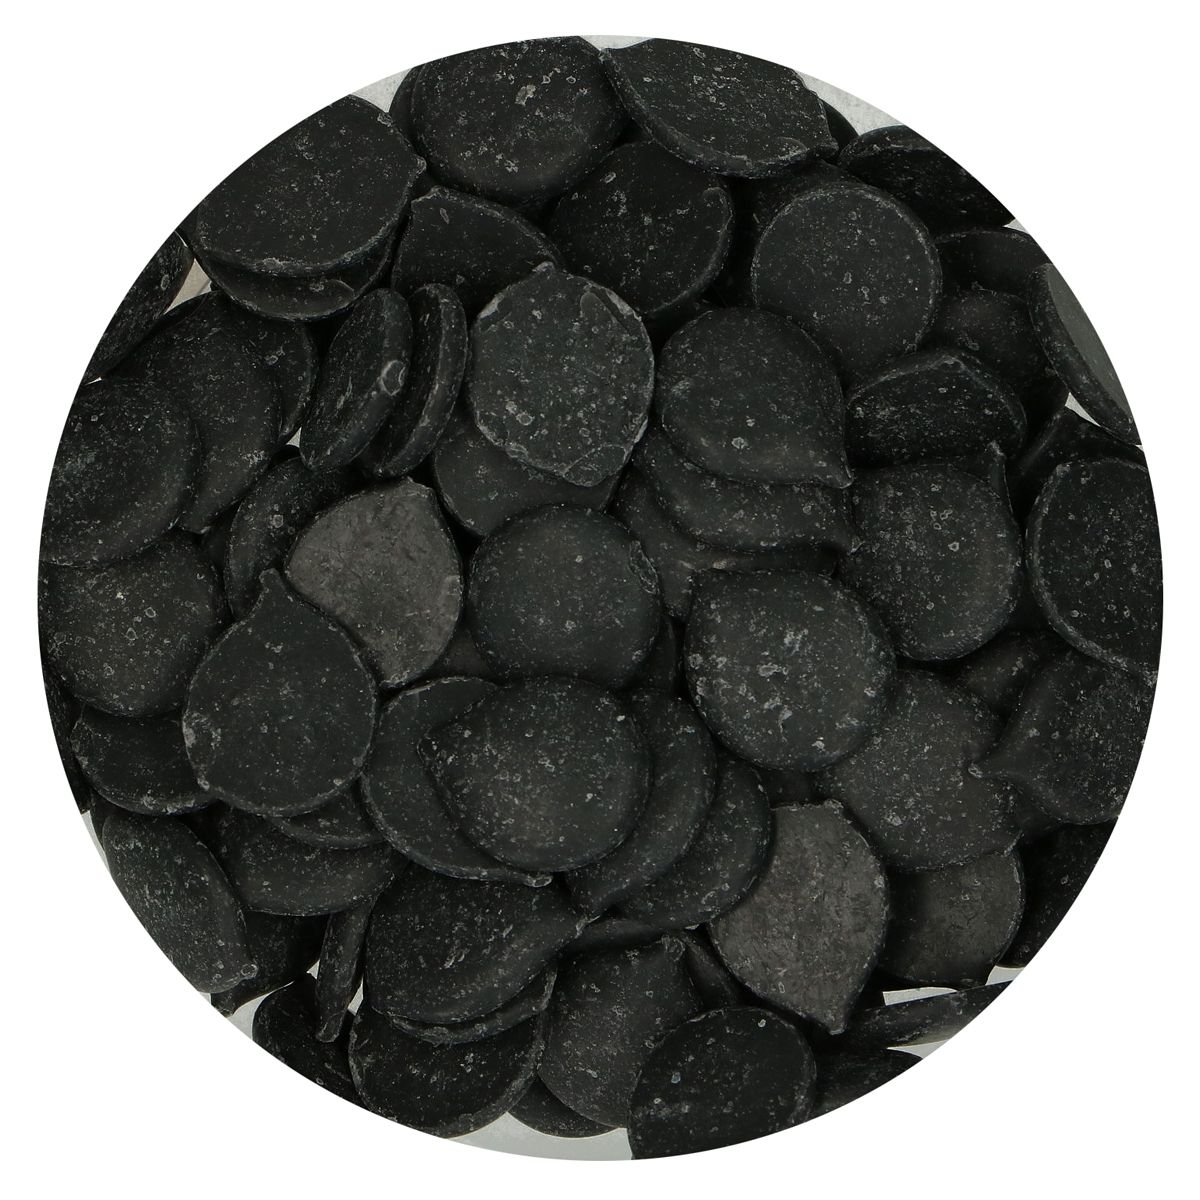 Imagen de producto: Deco Melts negros - 250 g - Funcakes